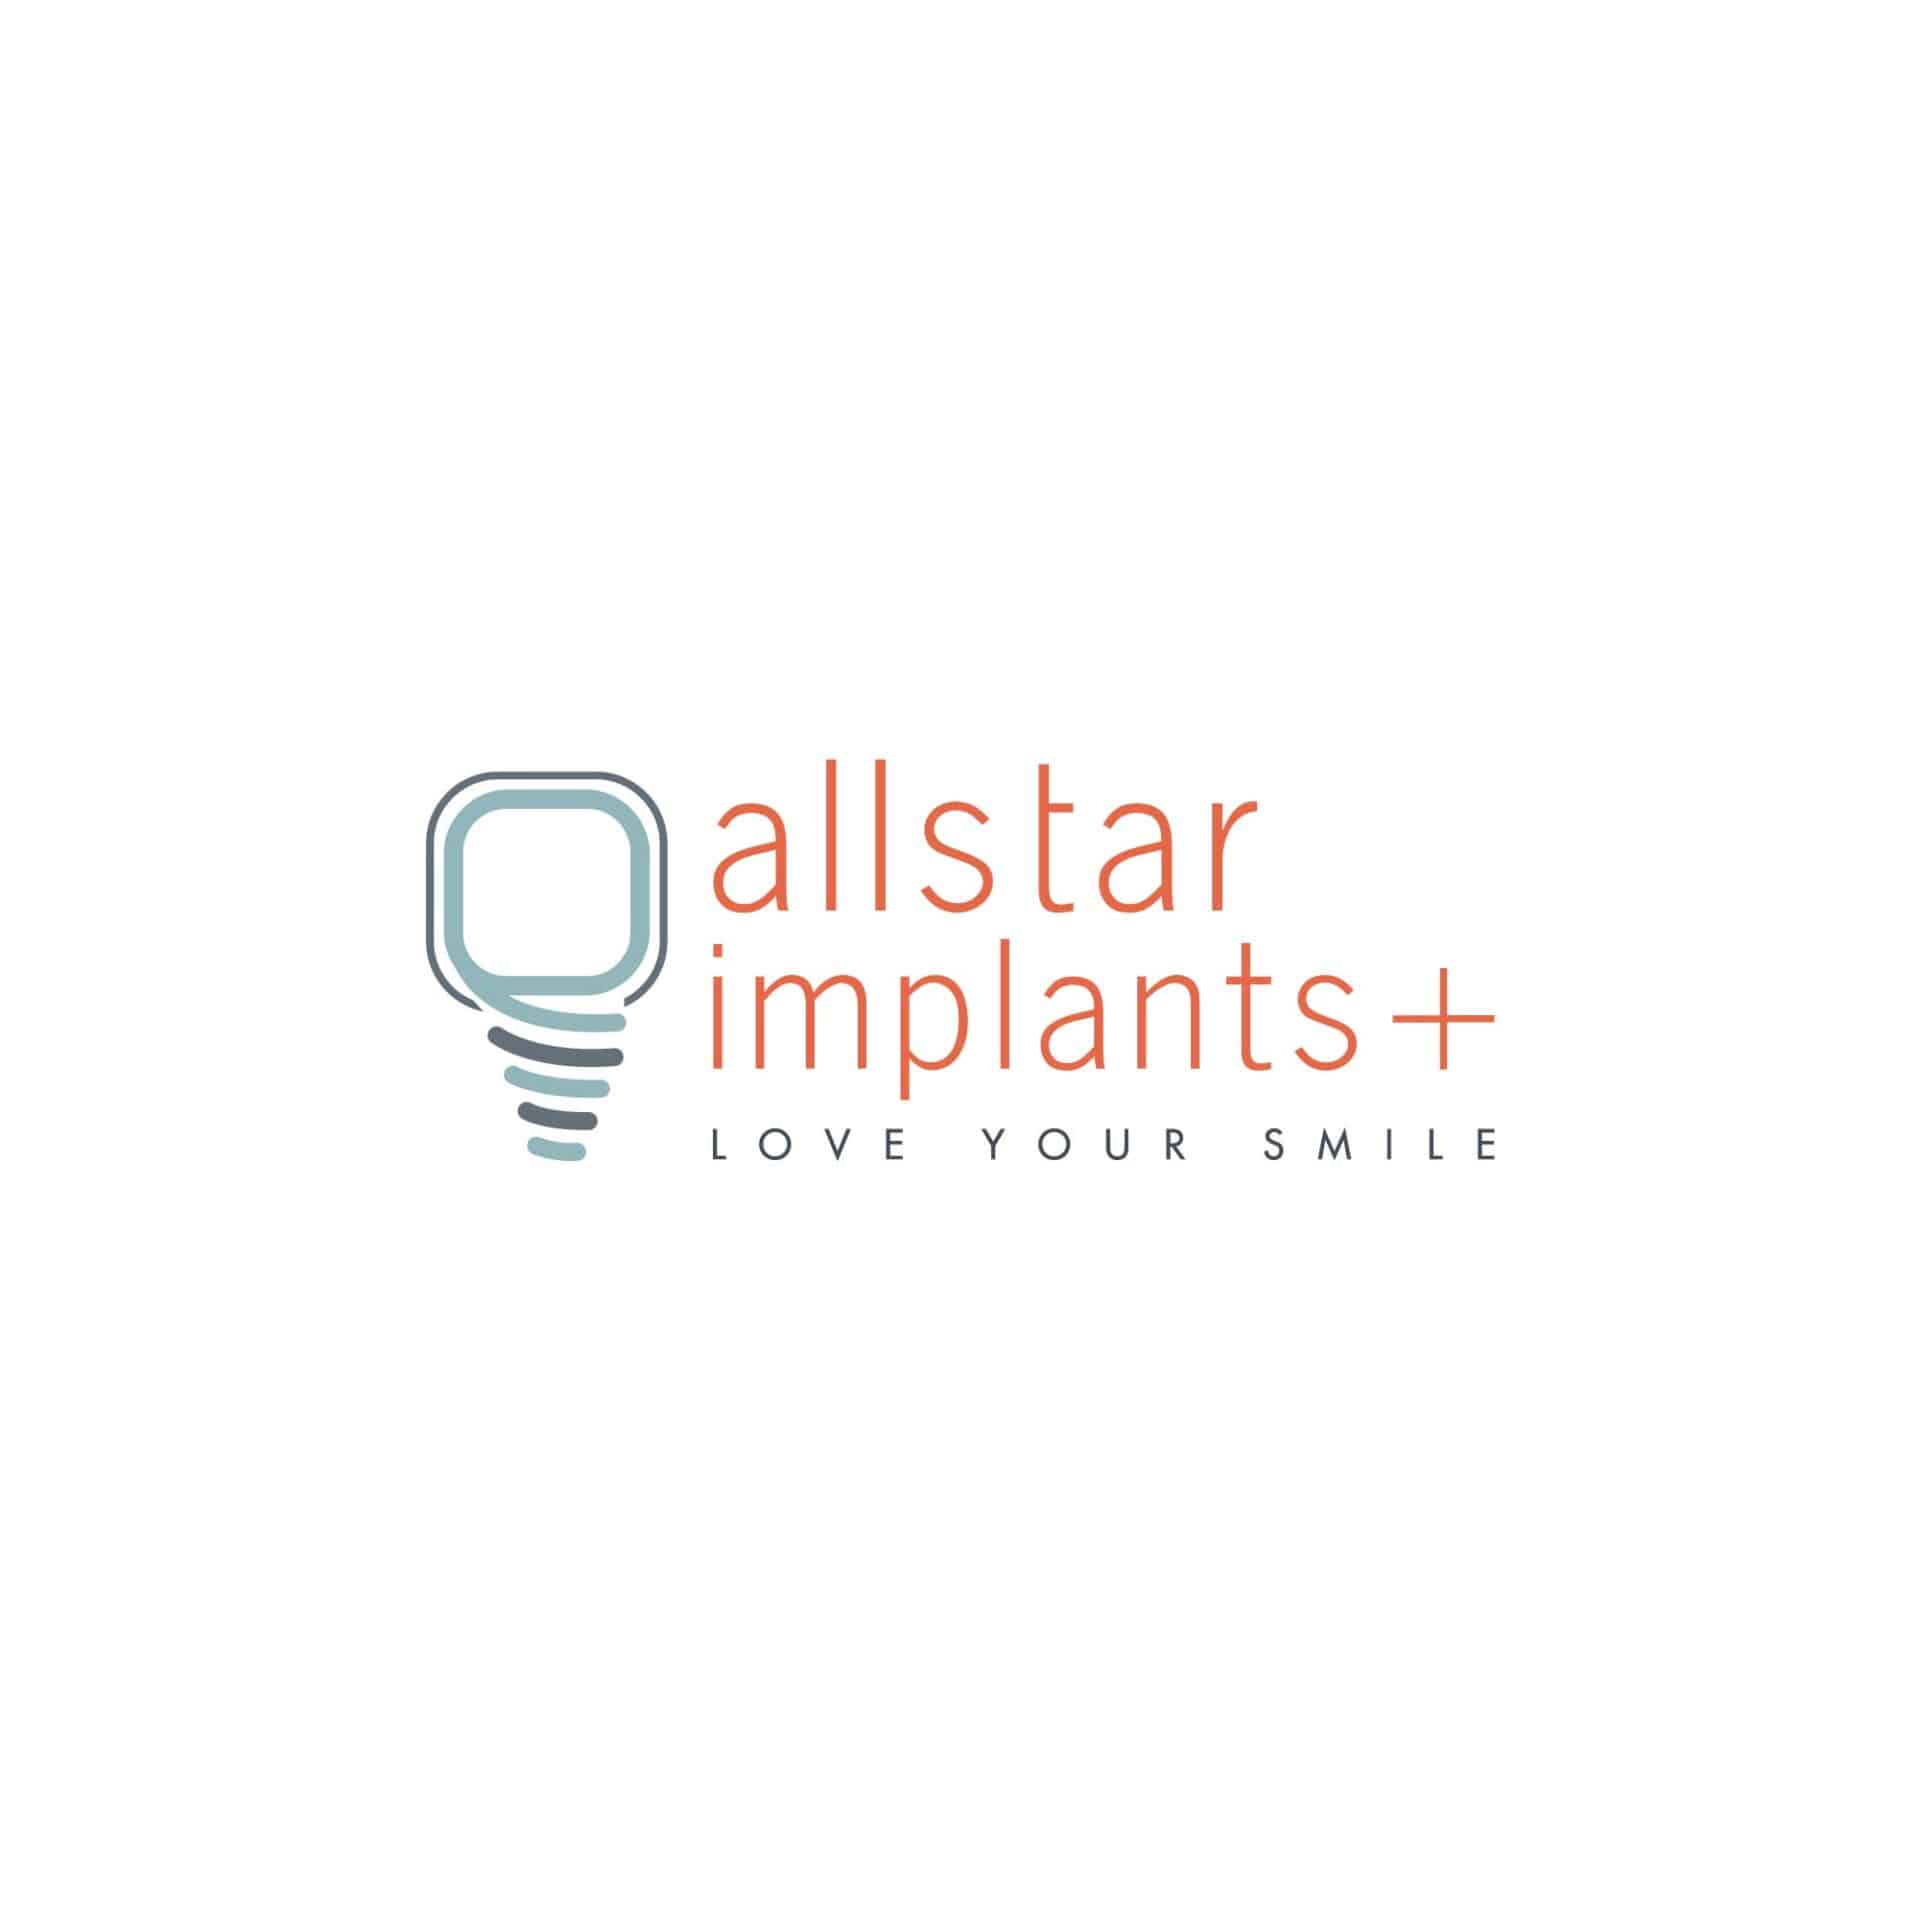 https://allstarimplantsplus.com/wp-content/uploads/2022/04/allstar-implants-_-I1-2_Fav-scaled.jpg